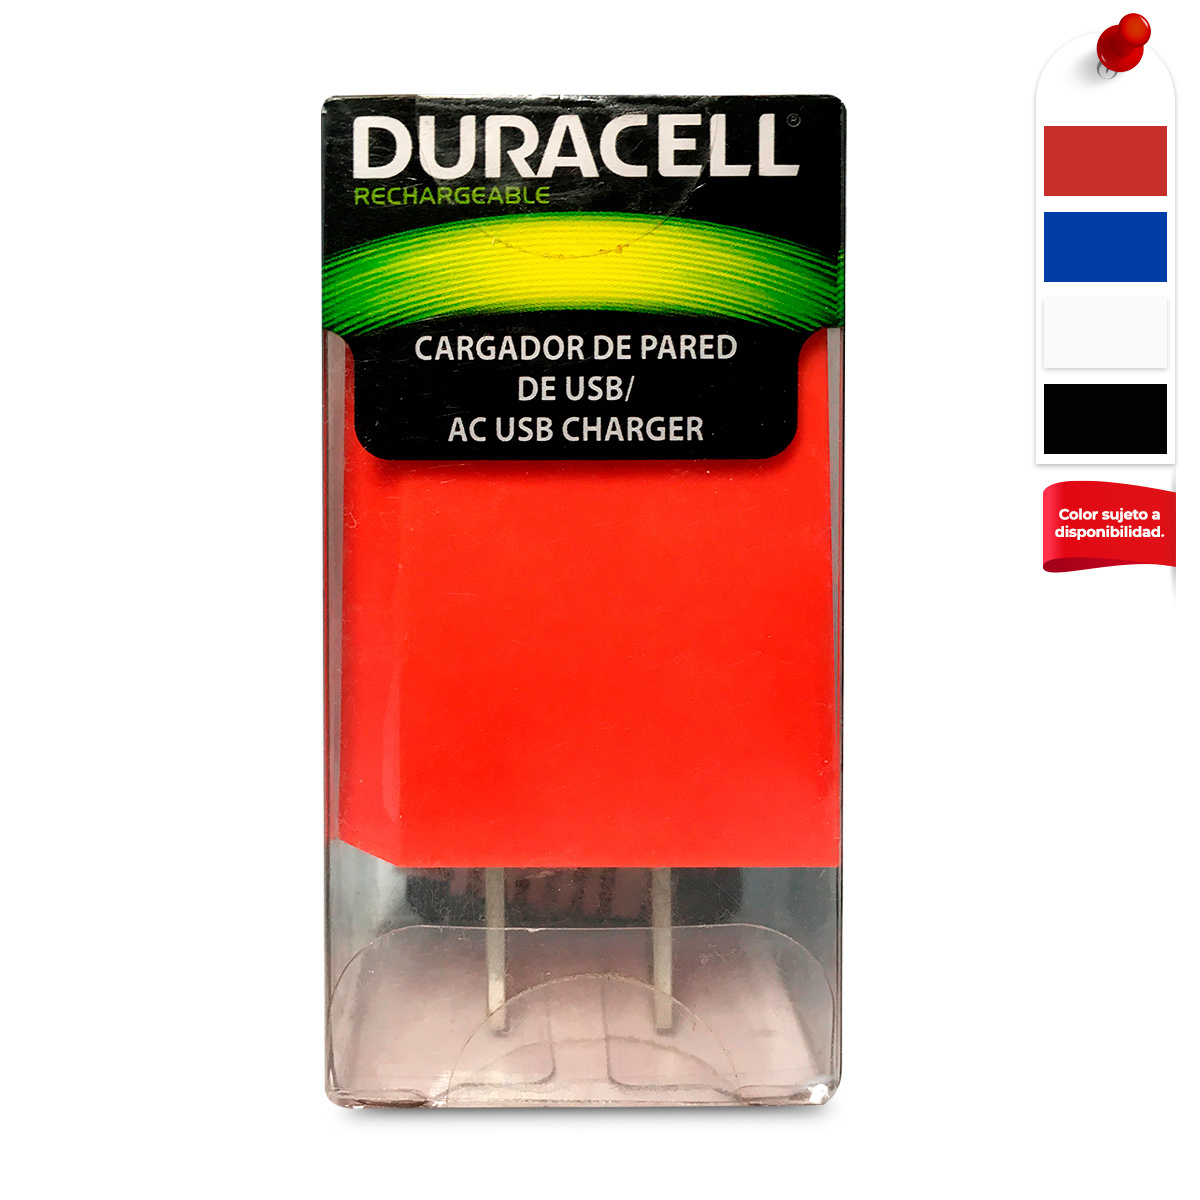 Cargador de Pared para Celular Duracell MP9962 / USB / Colores surtidos 